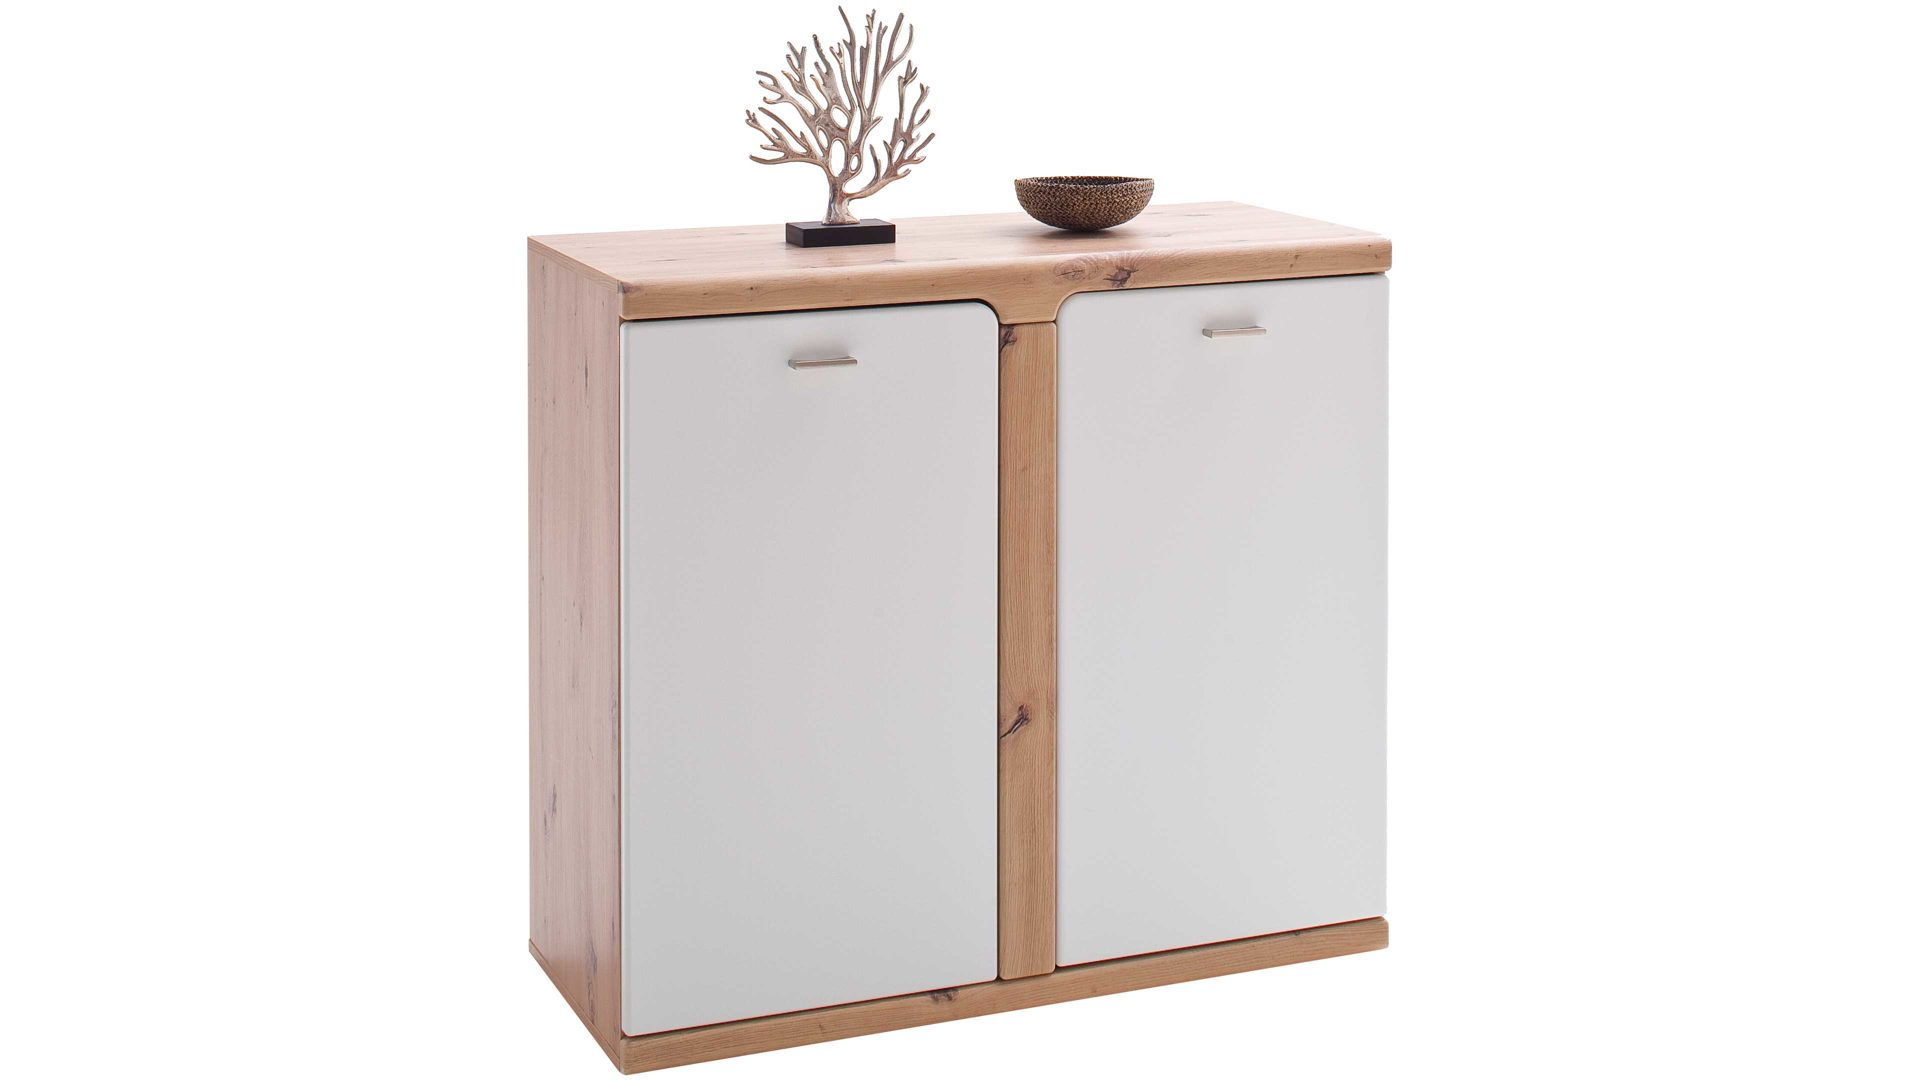 Türenkommode Mca furniture aus Holz in Weiß Garderoben-Türenkommode Torino Weiß & Balkeneiche – zwei Türen